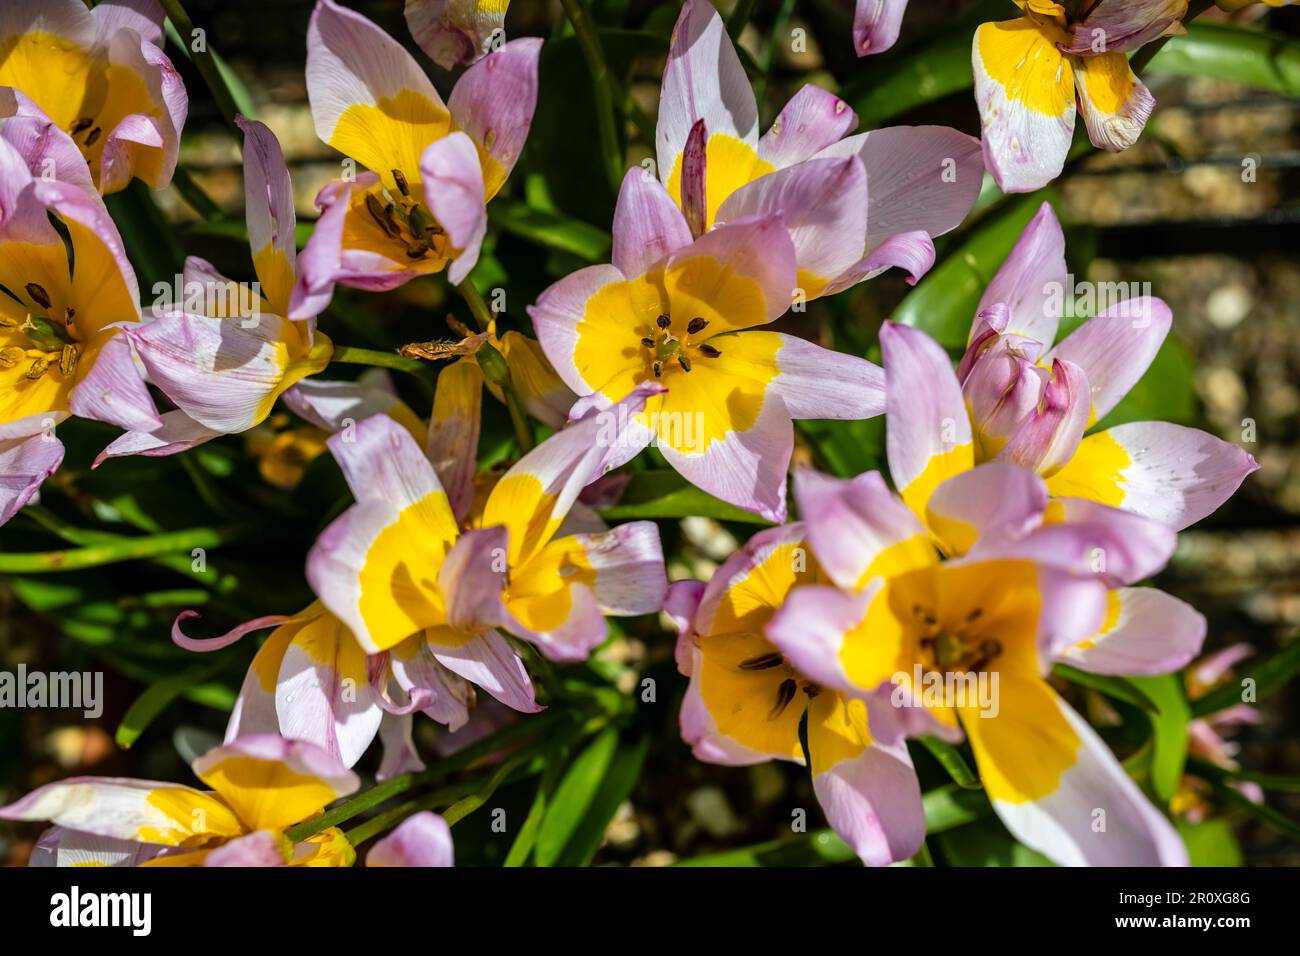 Tulip Botanical Bakeri Lilac Wonder Primavera bulbi varietà nano, fiori gialli centrati con petali rosa esterni, in luce solare dura ombre profonde Foto Stock